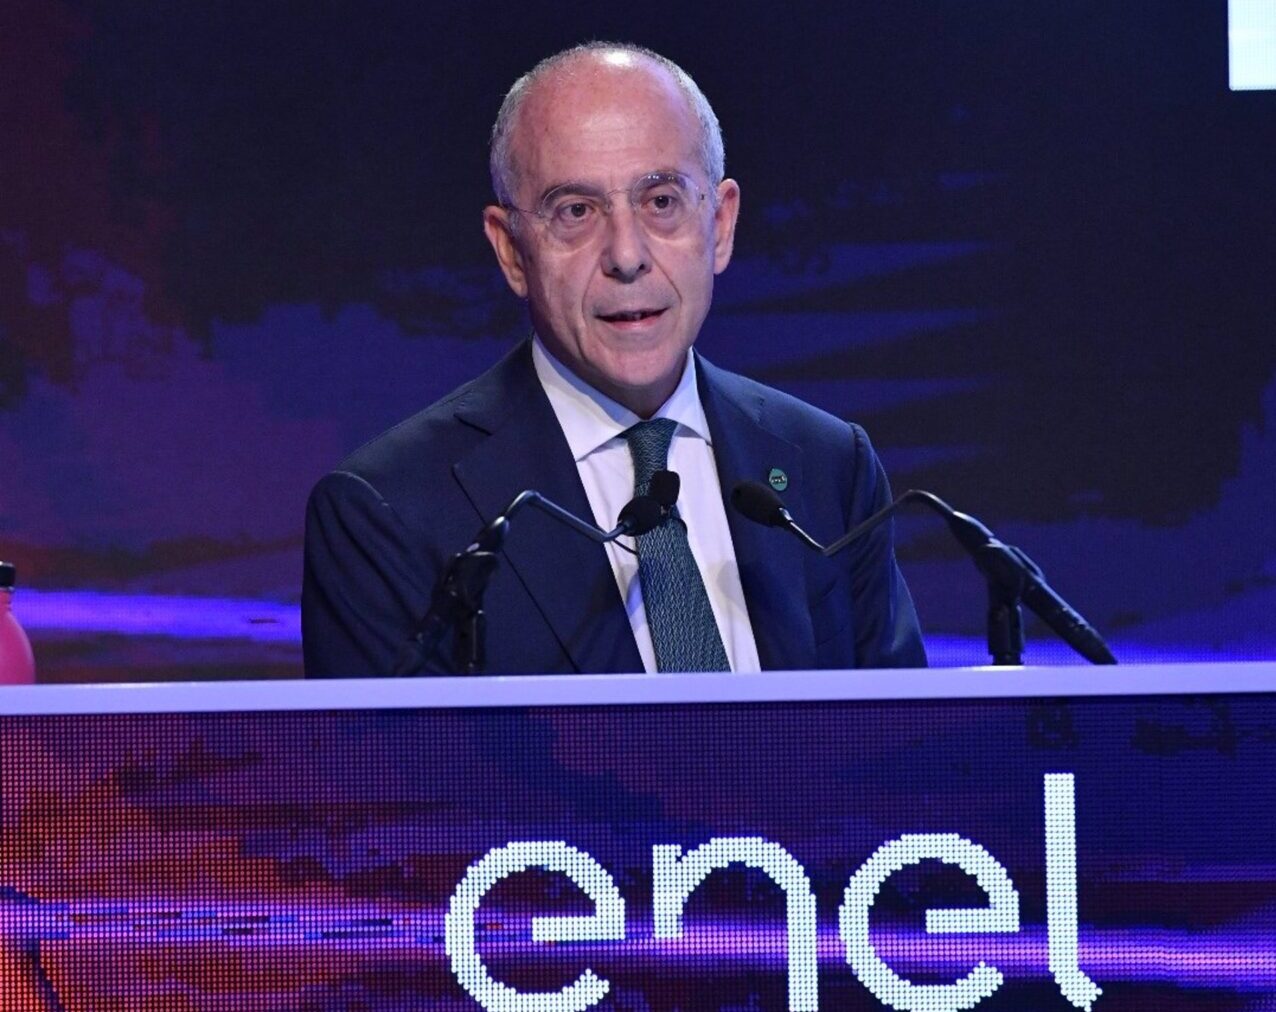 Francesco Starace, CEO de Enel, en la presentación del plan estratégico. FOTO: Enel